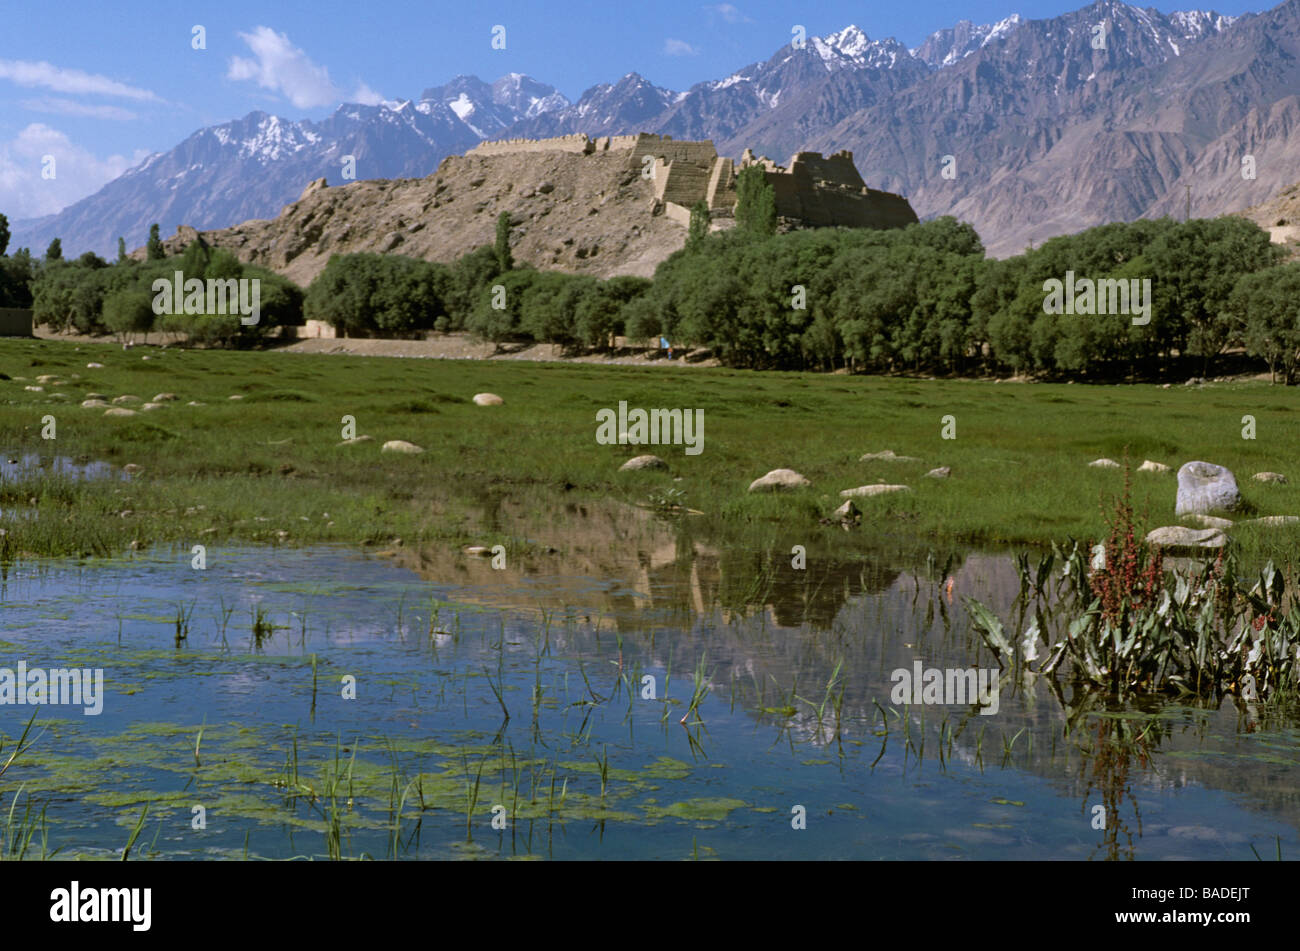 China, Xinjiang Province, Tashkurgan, Silk route, Silk road, the old citadel Stock Photo